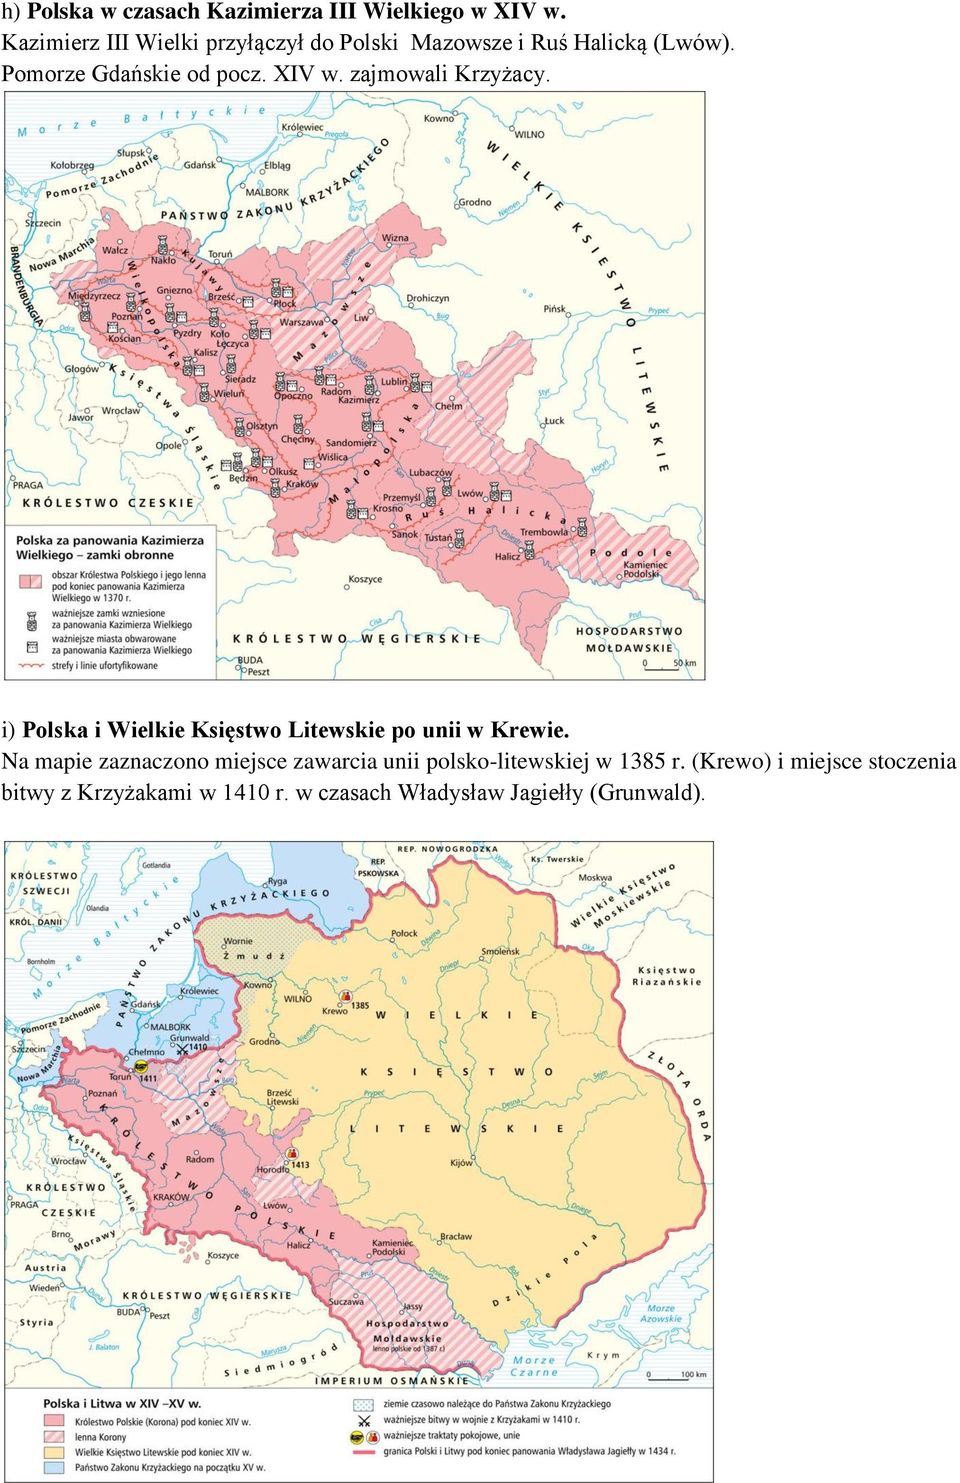 XIV w. zajmowali Krzyżacy. i) Polska i Wielkie Księstwo Litewskie po unii w Krewie.